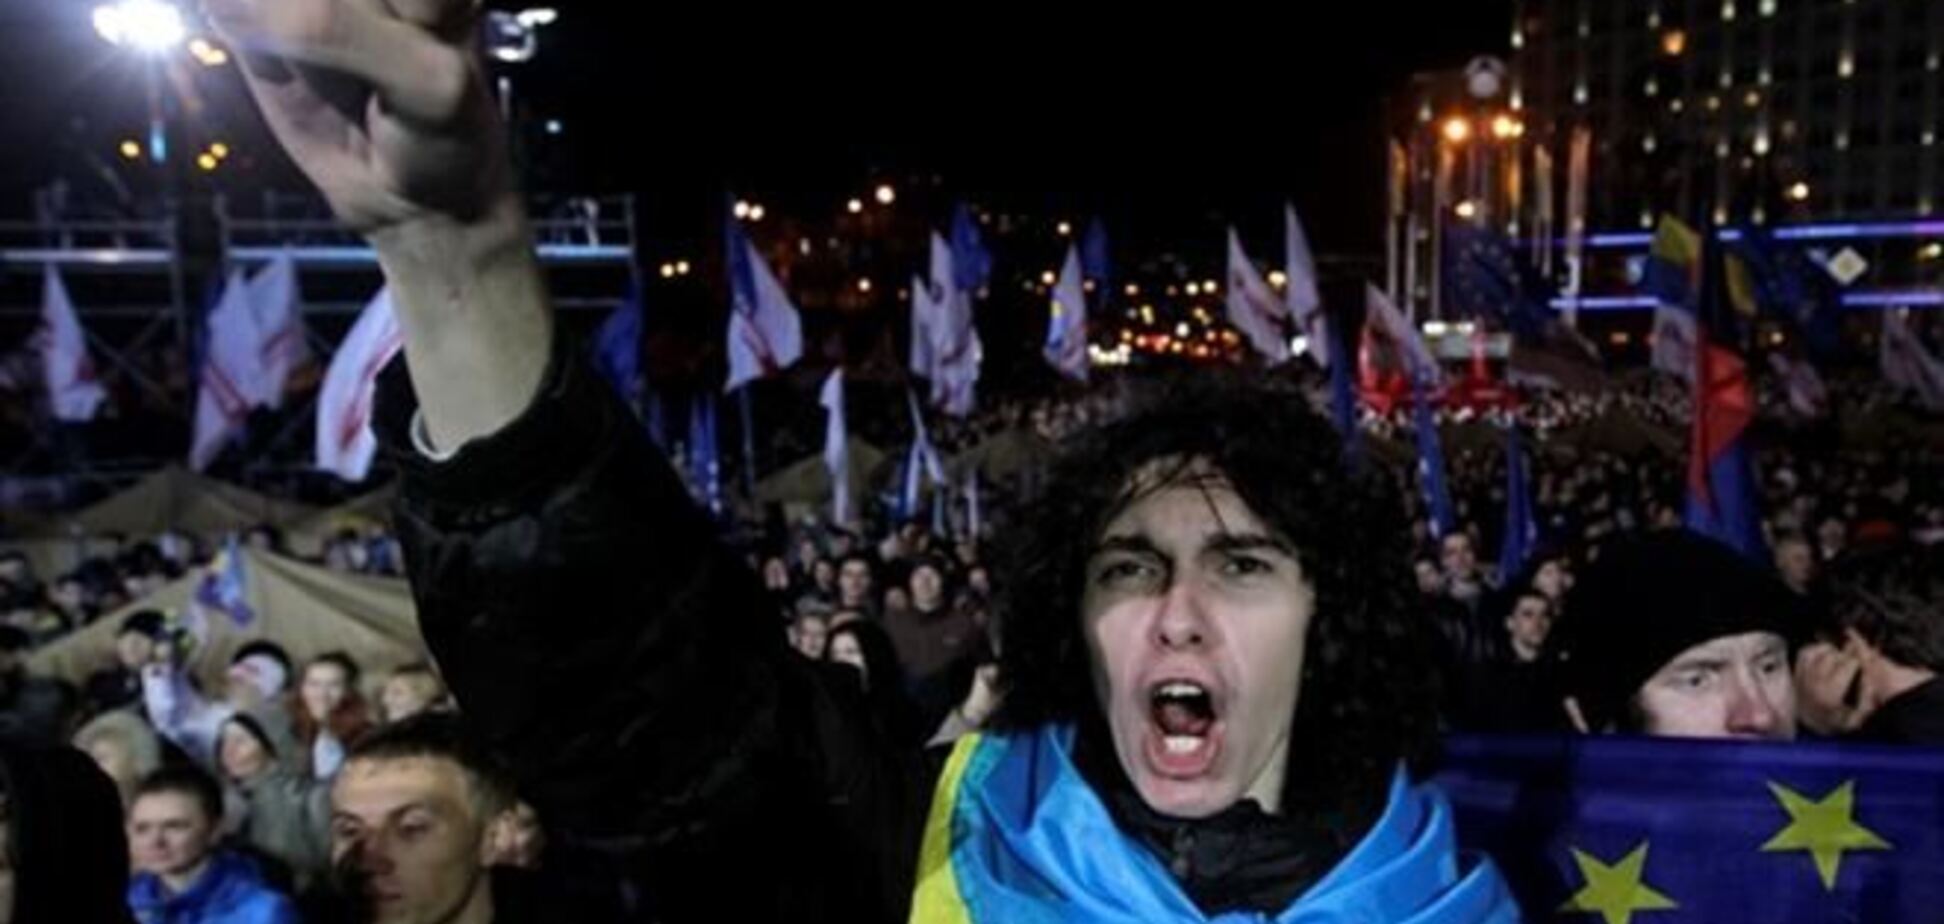 ЗМІ: невідомі захопили будинок активіста Евромайдана